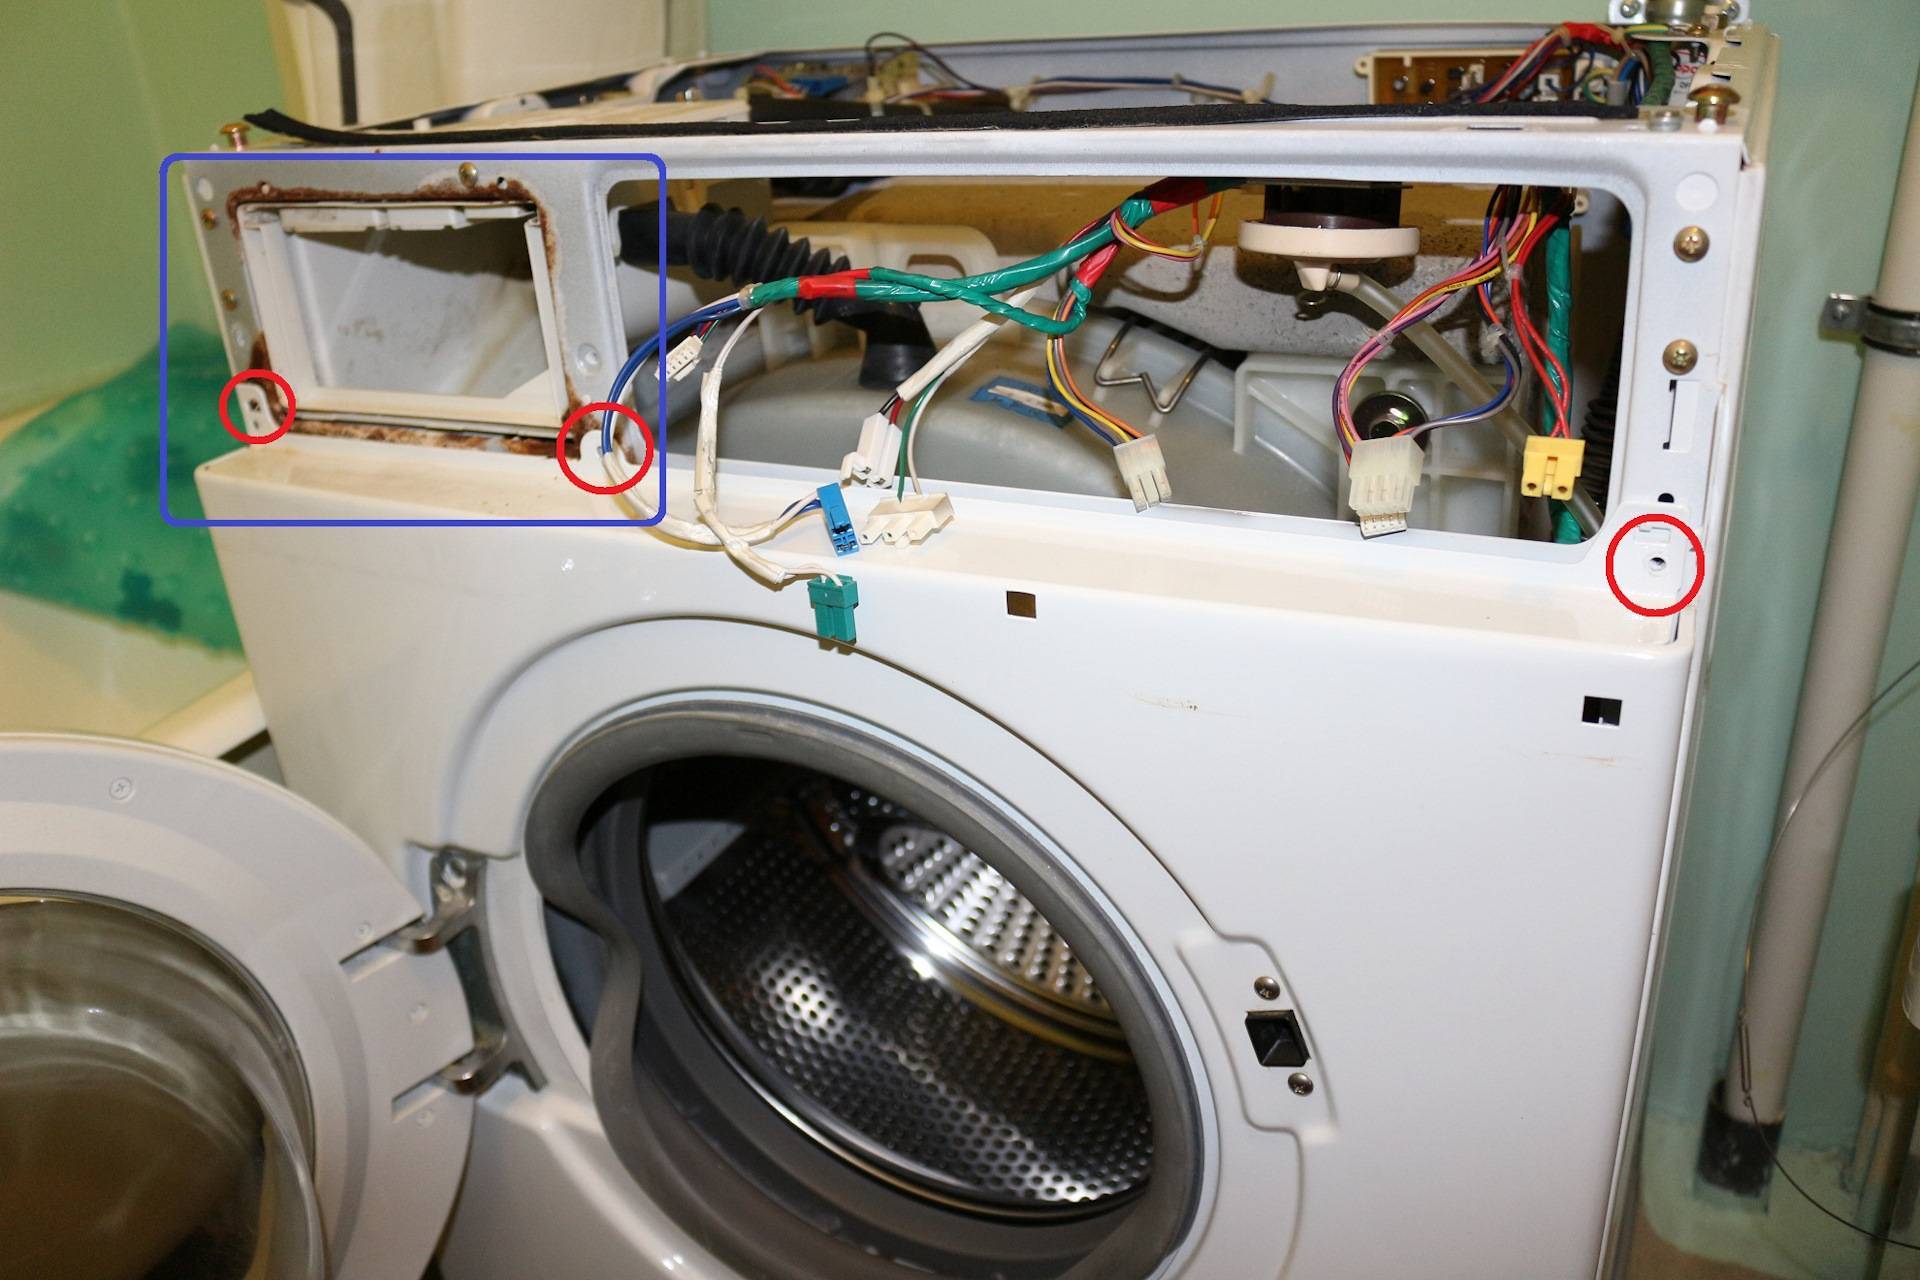 Методы разборки барабанов стиральных машин индезит